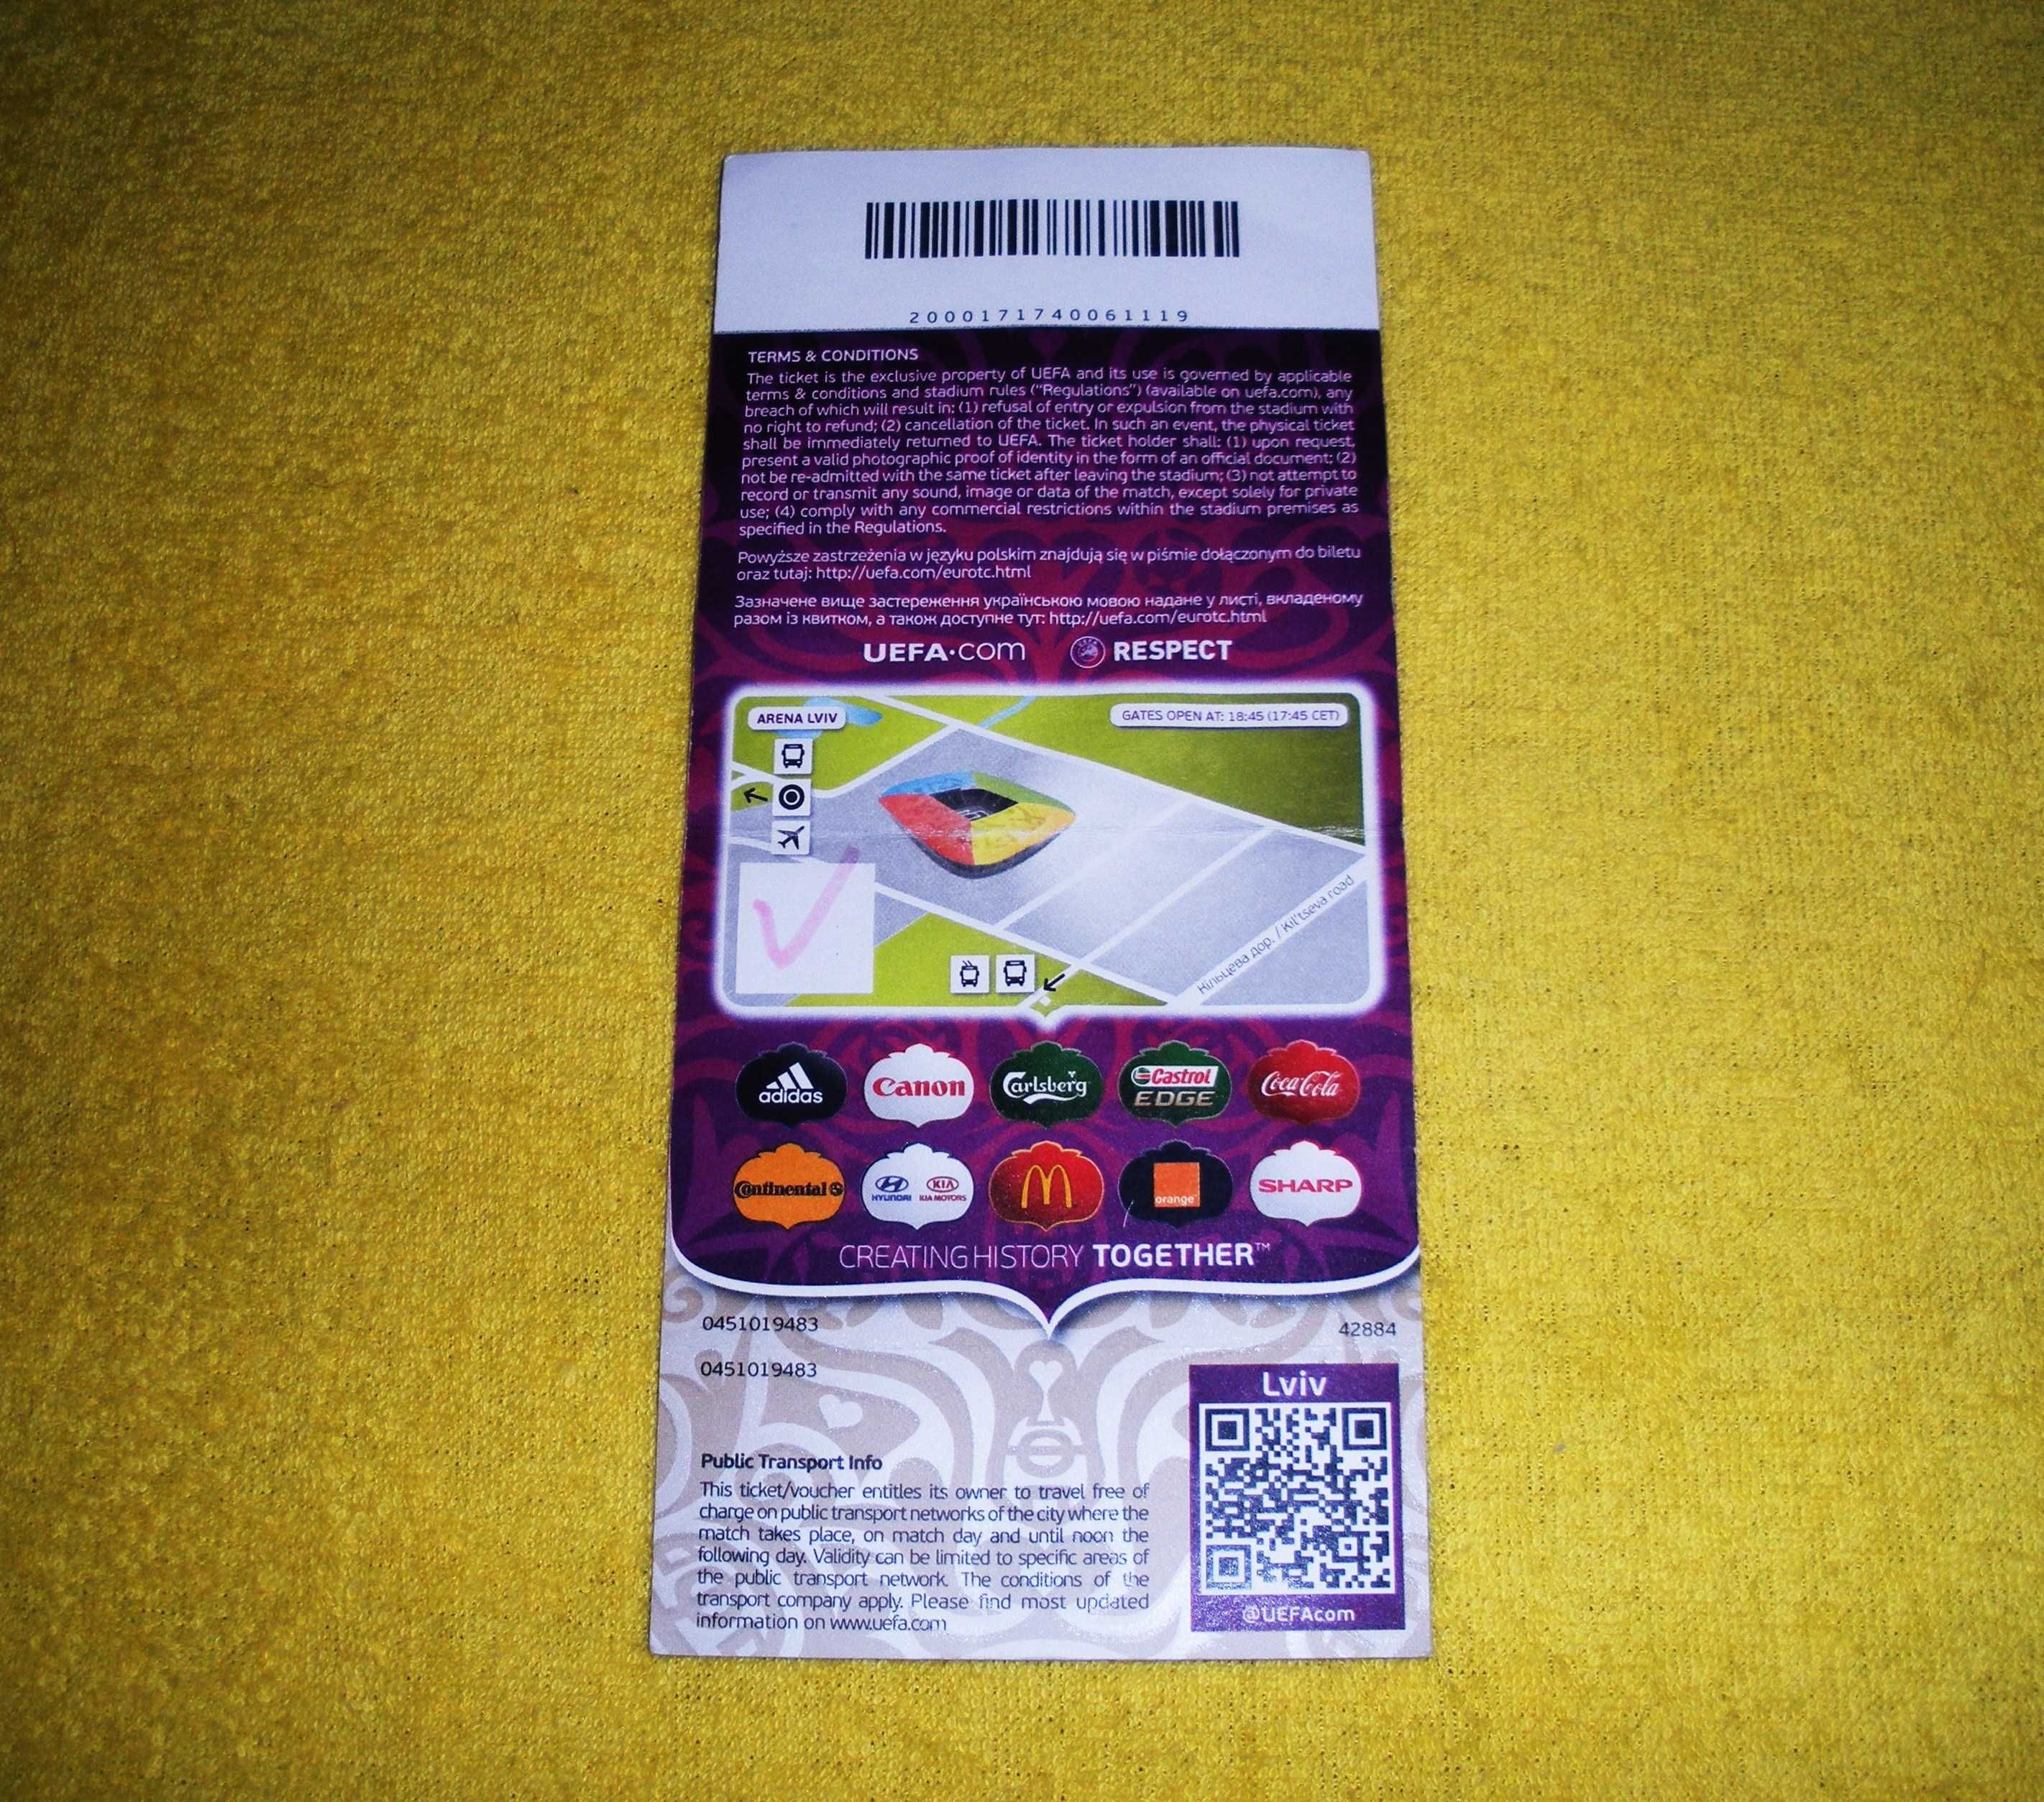 Билет на “ЕВРО – 2012”, матч “Дания – Германия” (1:2), “Арена Львов”